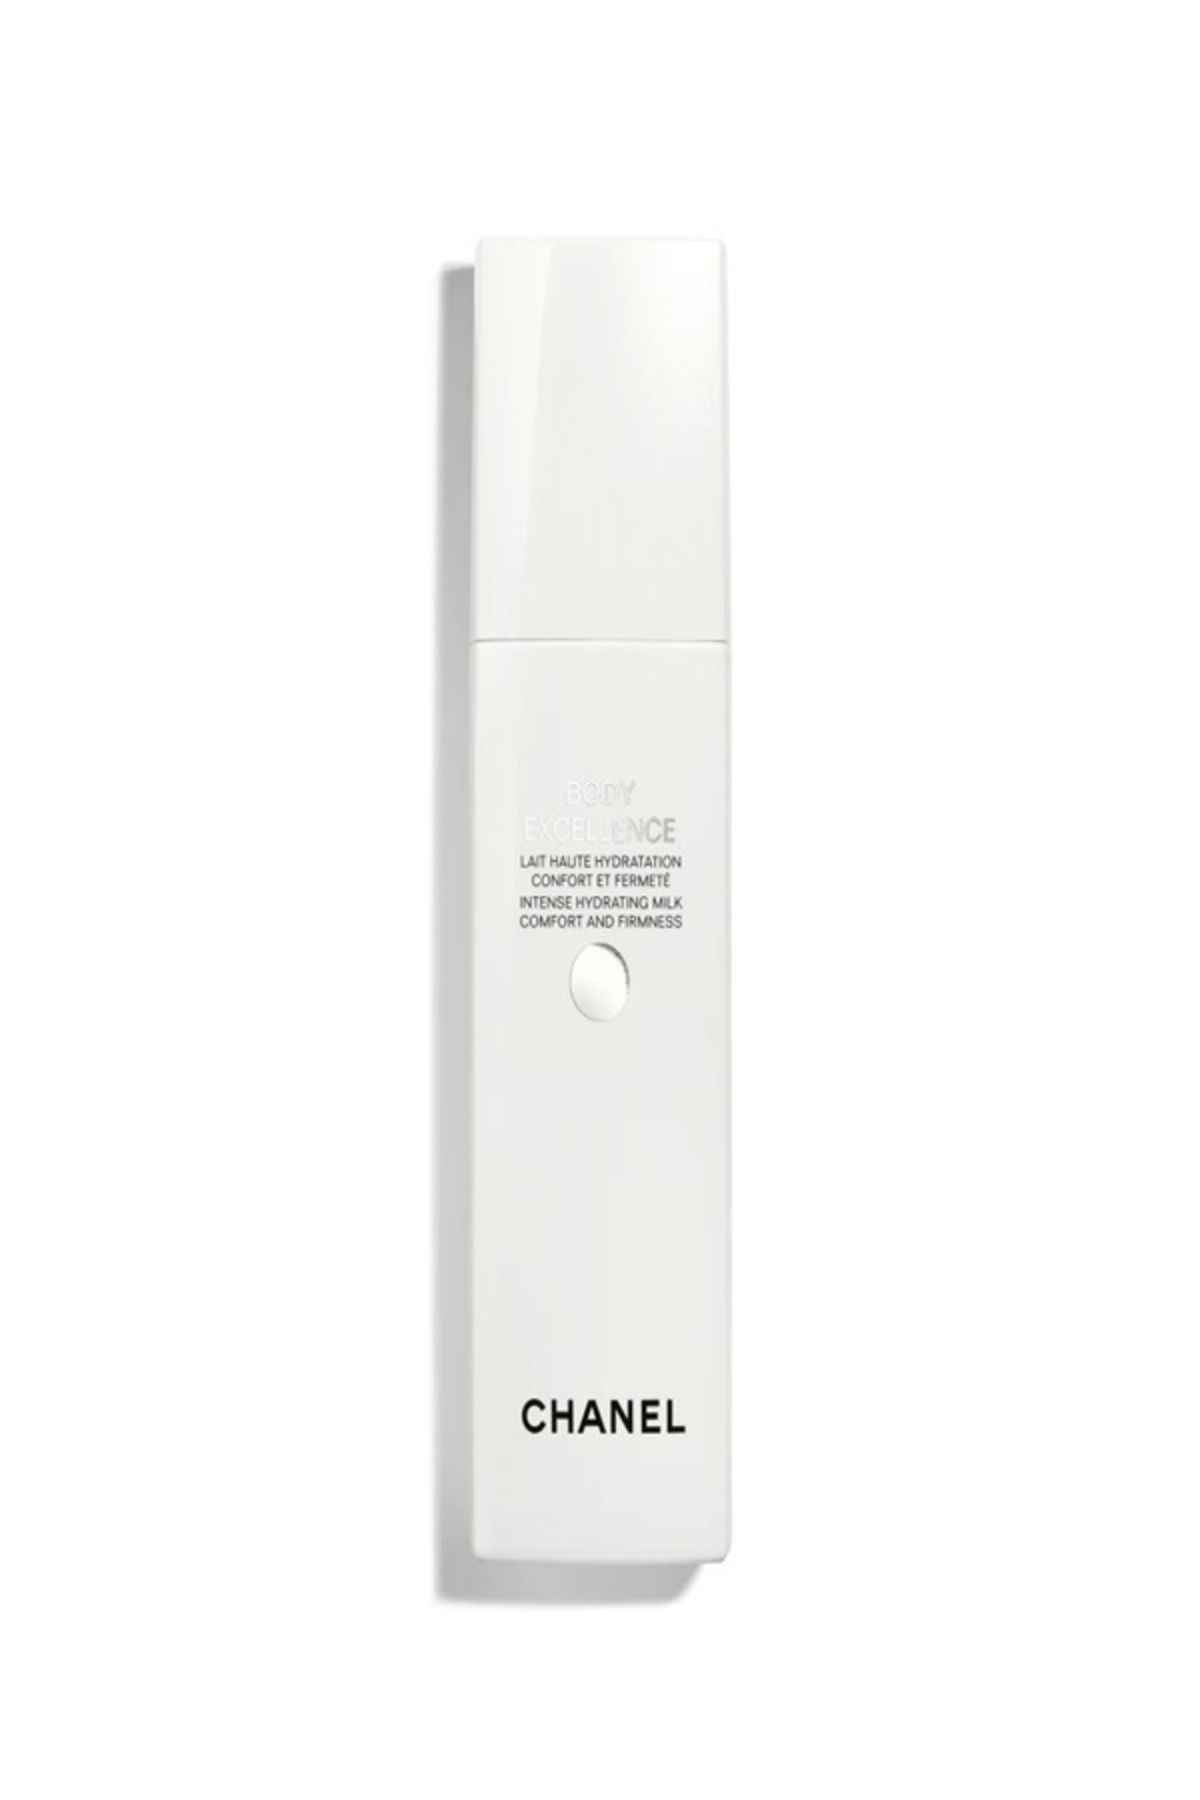 Chanel BODY EXCELLENCE MILK RAHATLATIR, SIKILAŞTIRIR VE YOĞUN SUNAR-200 ml